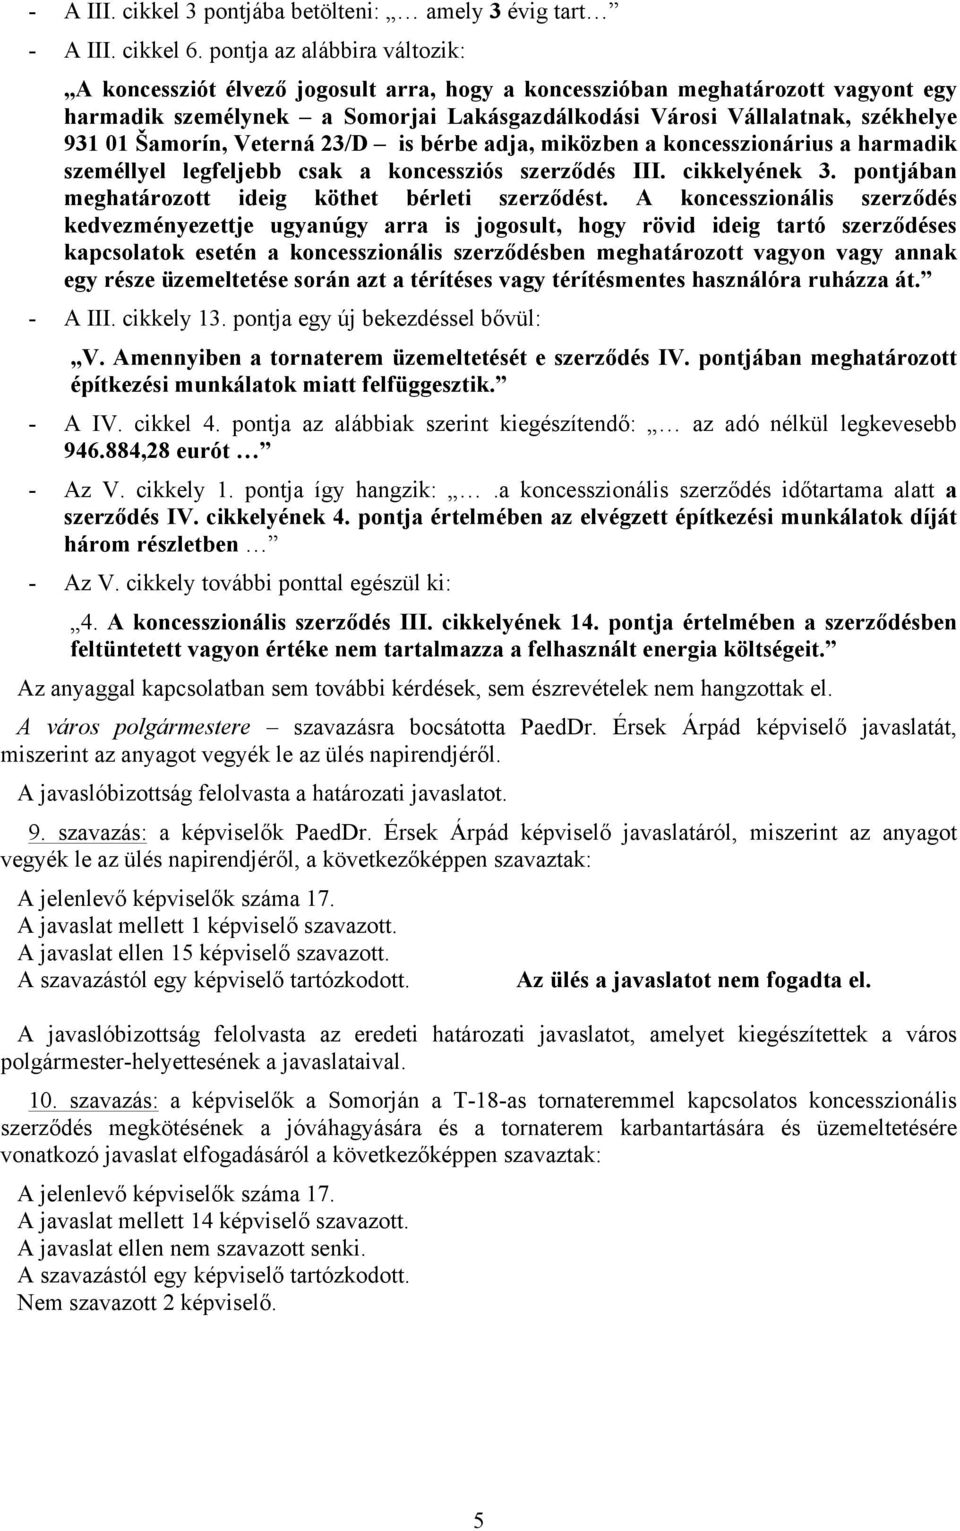 Šamorín, Veterná 23/D is bérbe adja, miközben a koncesszionárius a harmadik személlyel legfeljebb csak a koncessziós szerződés III. cikkelyének 3.